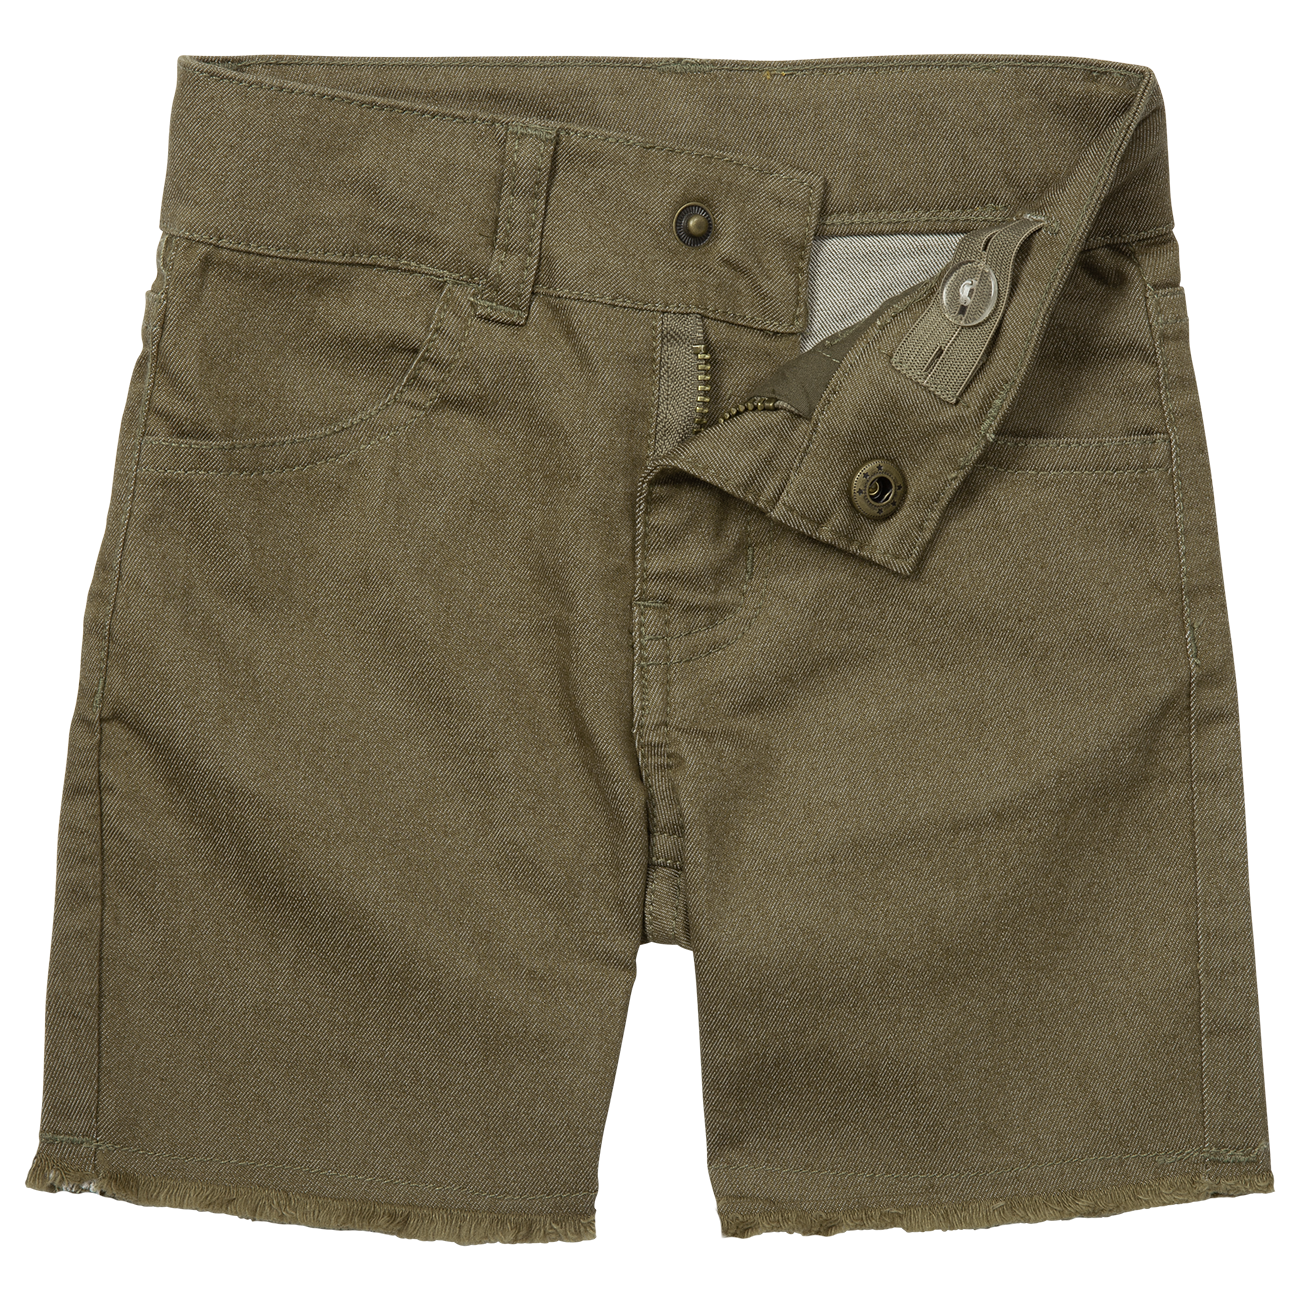 Waco Shorts (Army)